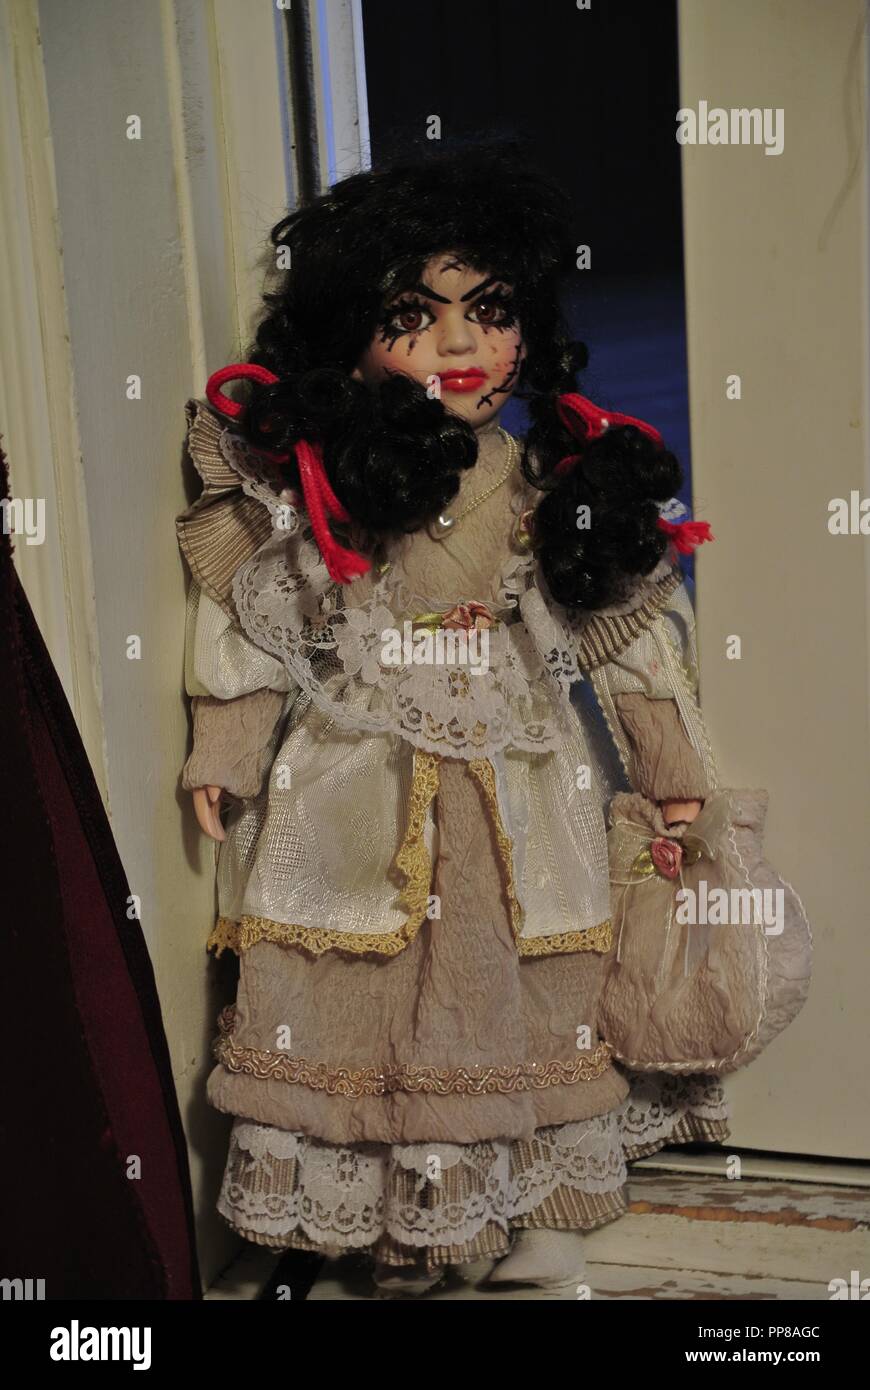 Un escalofriante antigua muñeca de porcelana con largo cabello negro y un terrorífico, hermoso rostro con cicatrices,,vestida de un vestido vintage blanco, llegando Halloween Foto de stock